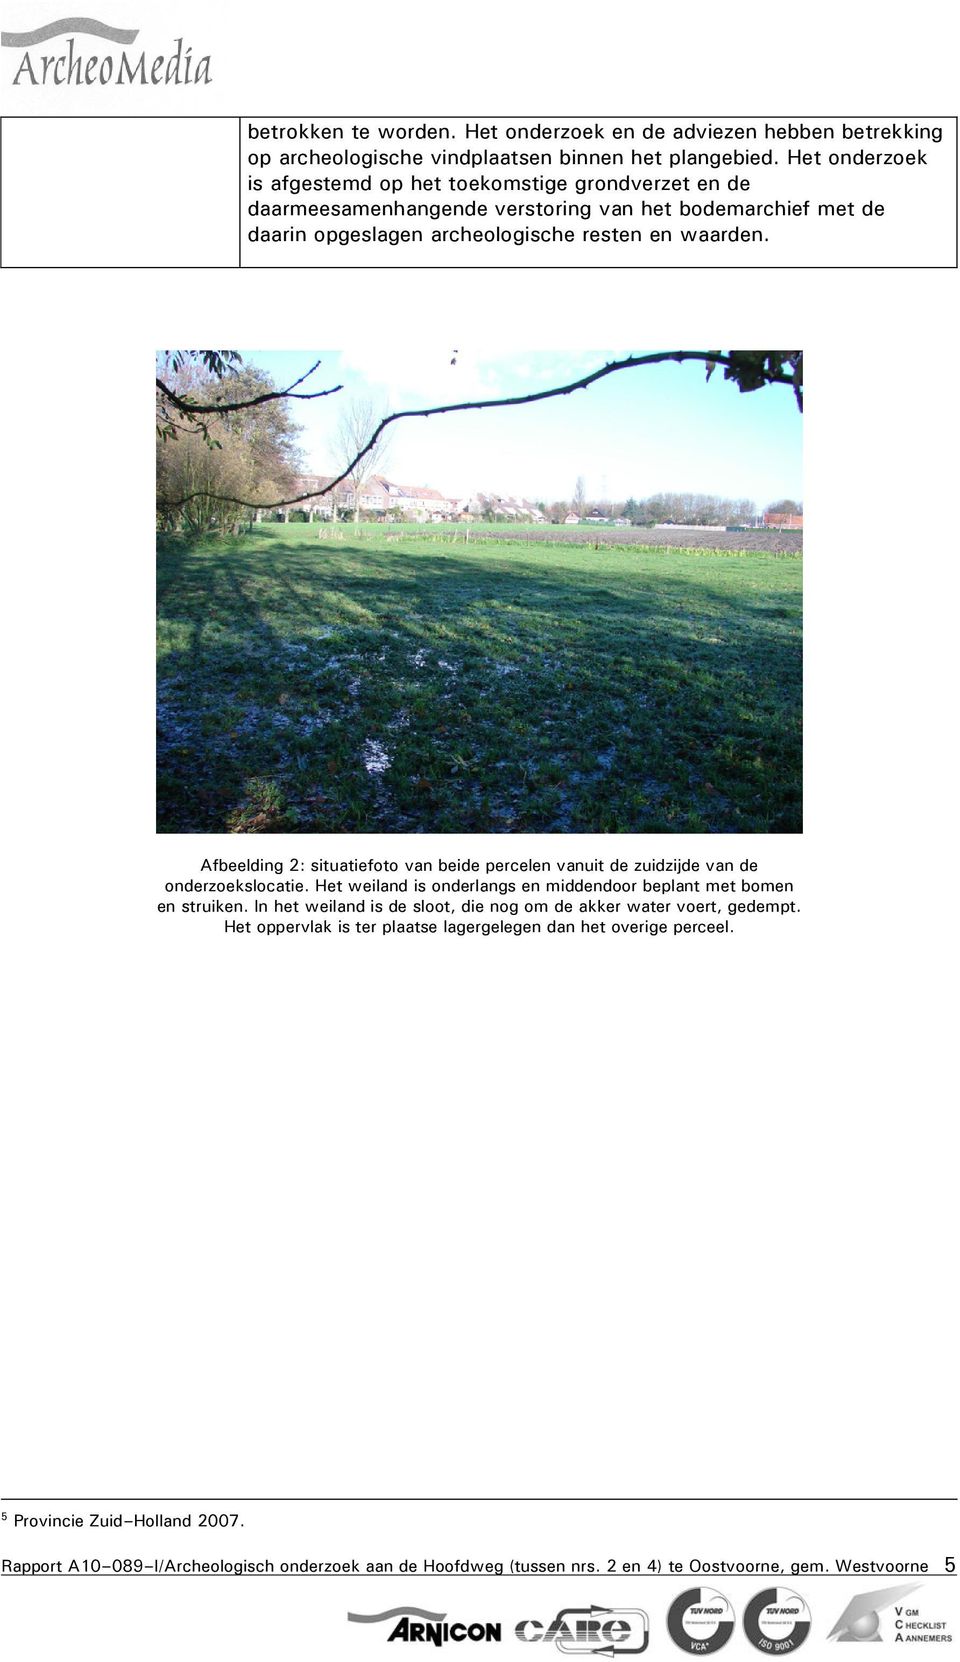 Afbeelding 2: situatiefoto van beide percelen vanuit de zuidzijde van de onderzoekslocatie. Het weiland is onderlangs en middendoor beplant met bomen en struiken.